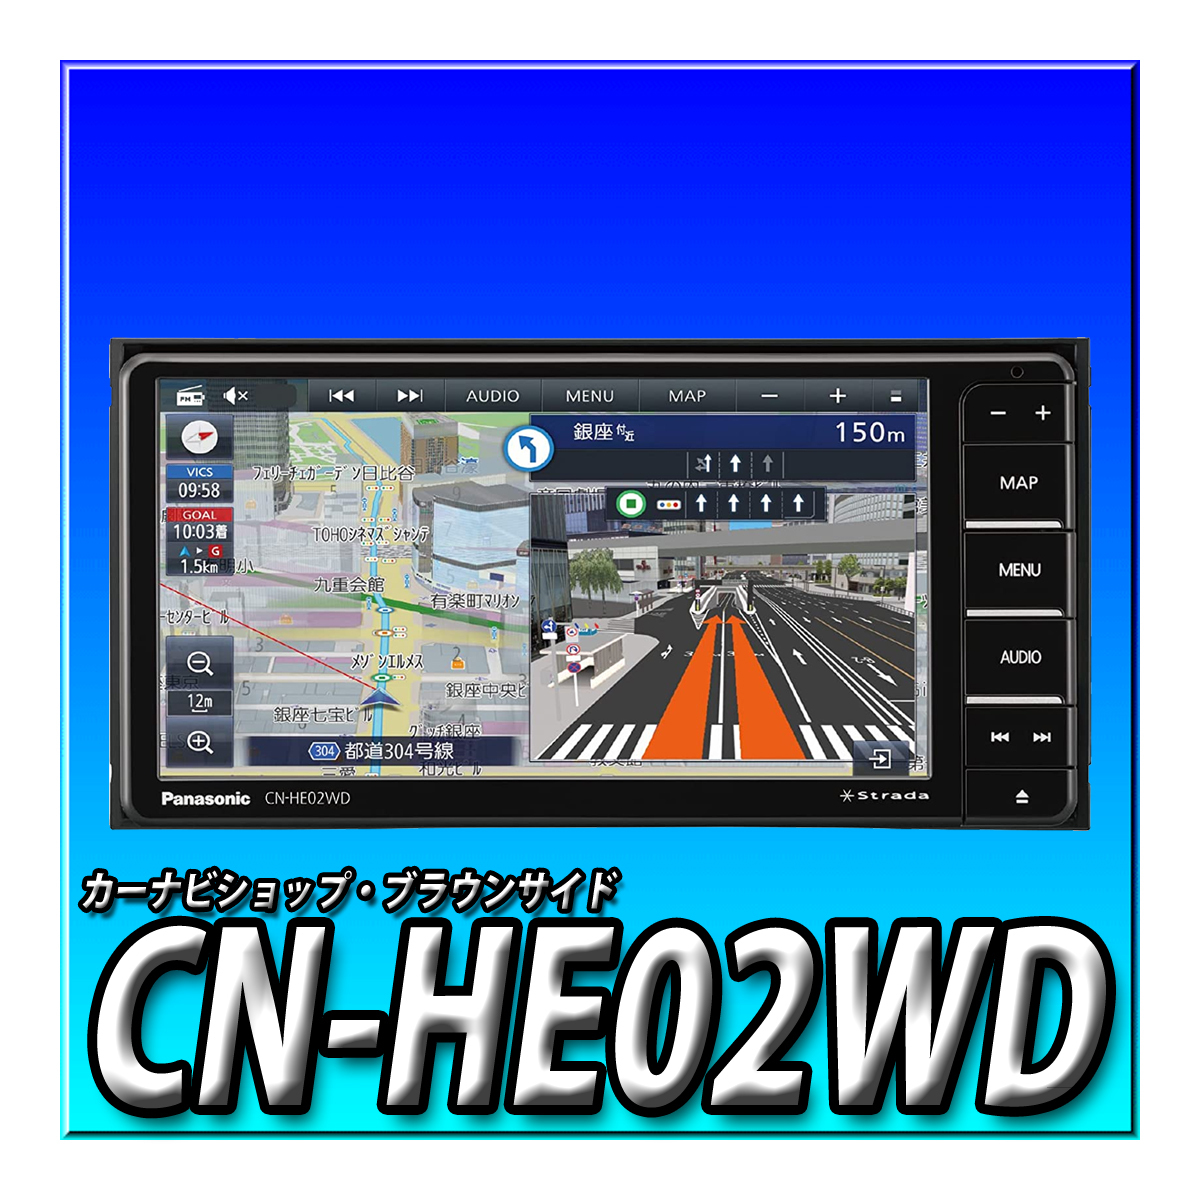 CN-HE02WD パナソニック ストラーダ 新品 200mmワイド HD液晶 地デジ DVD CD録音 Bluetooth Strada カーナビ  7型 7インチ